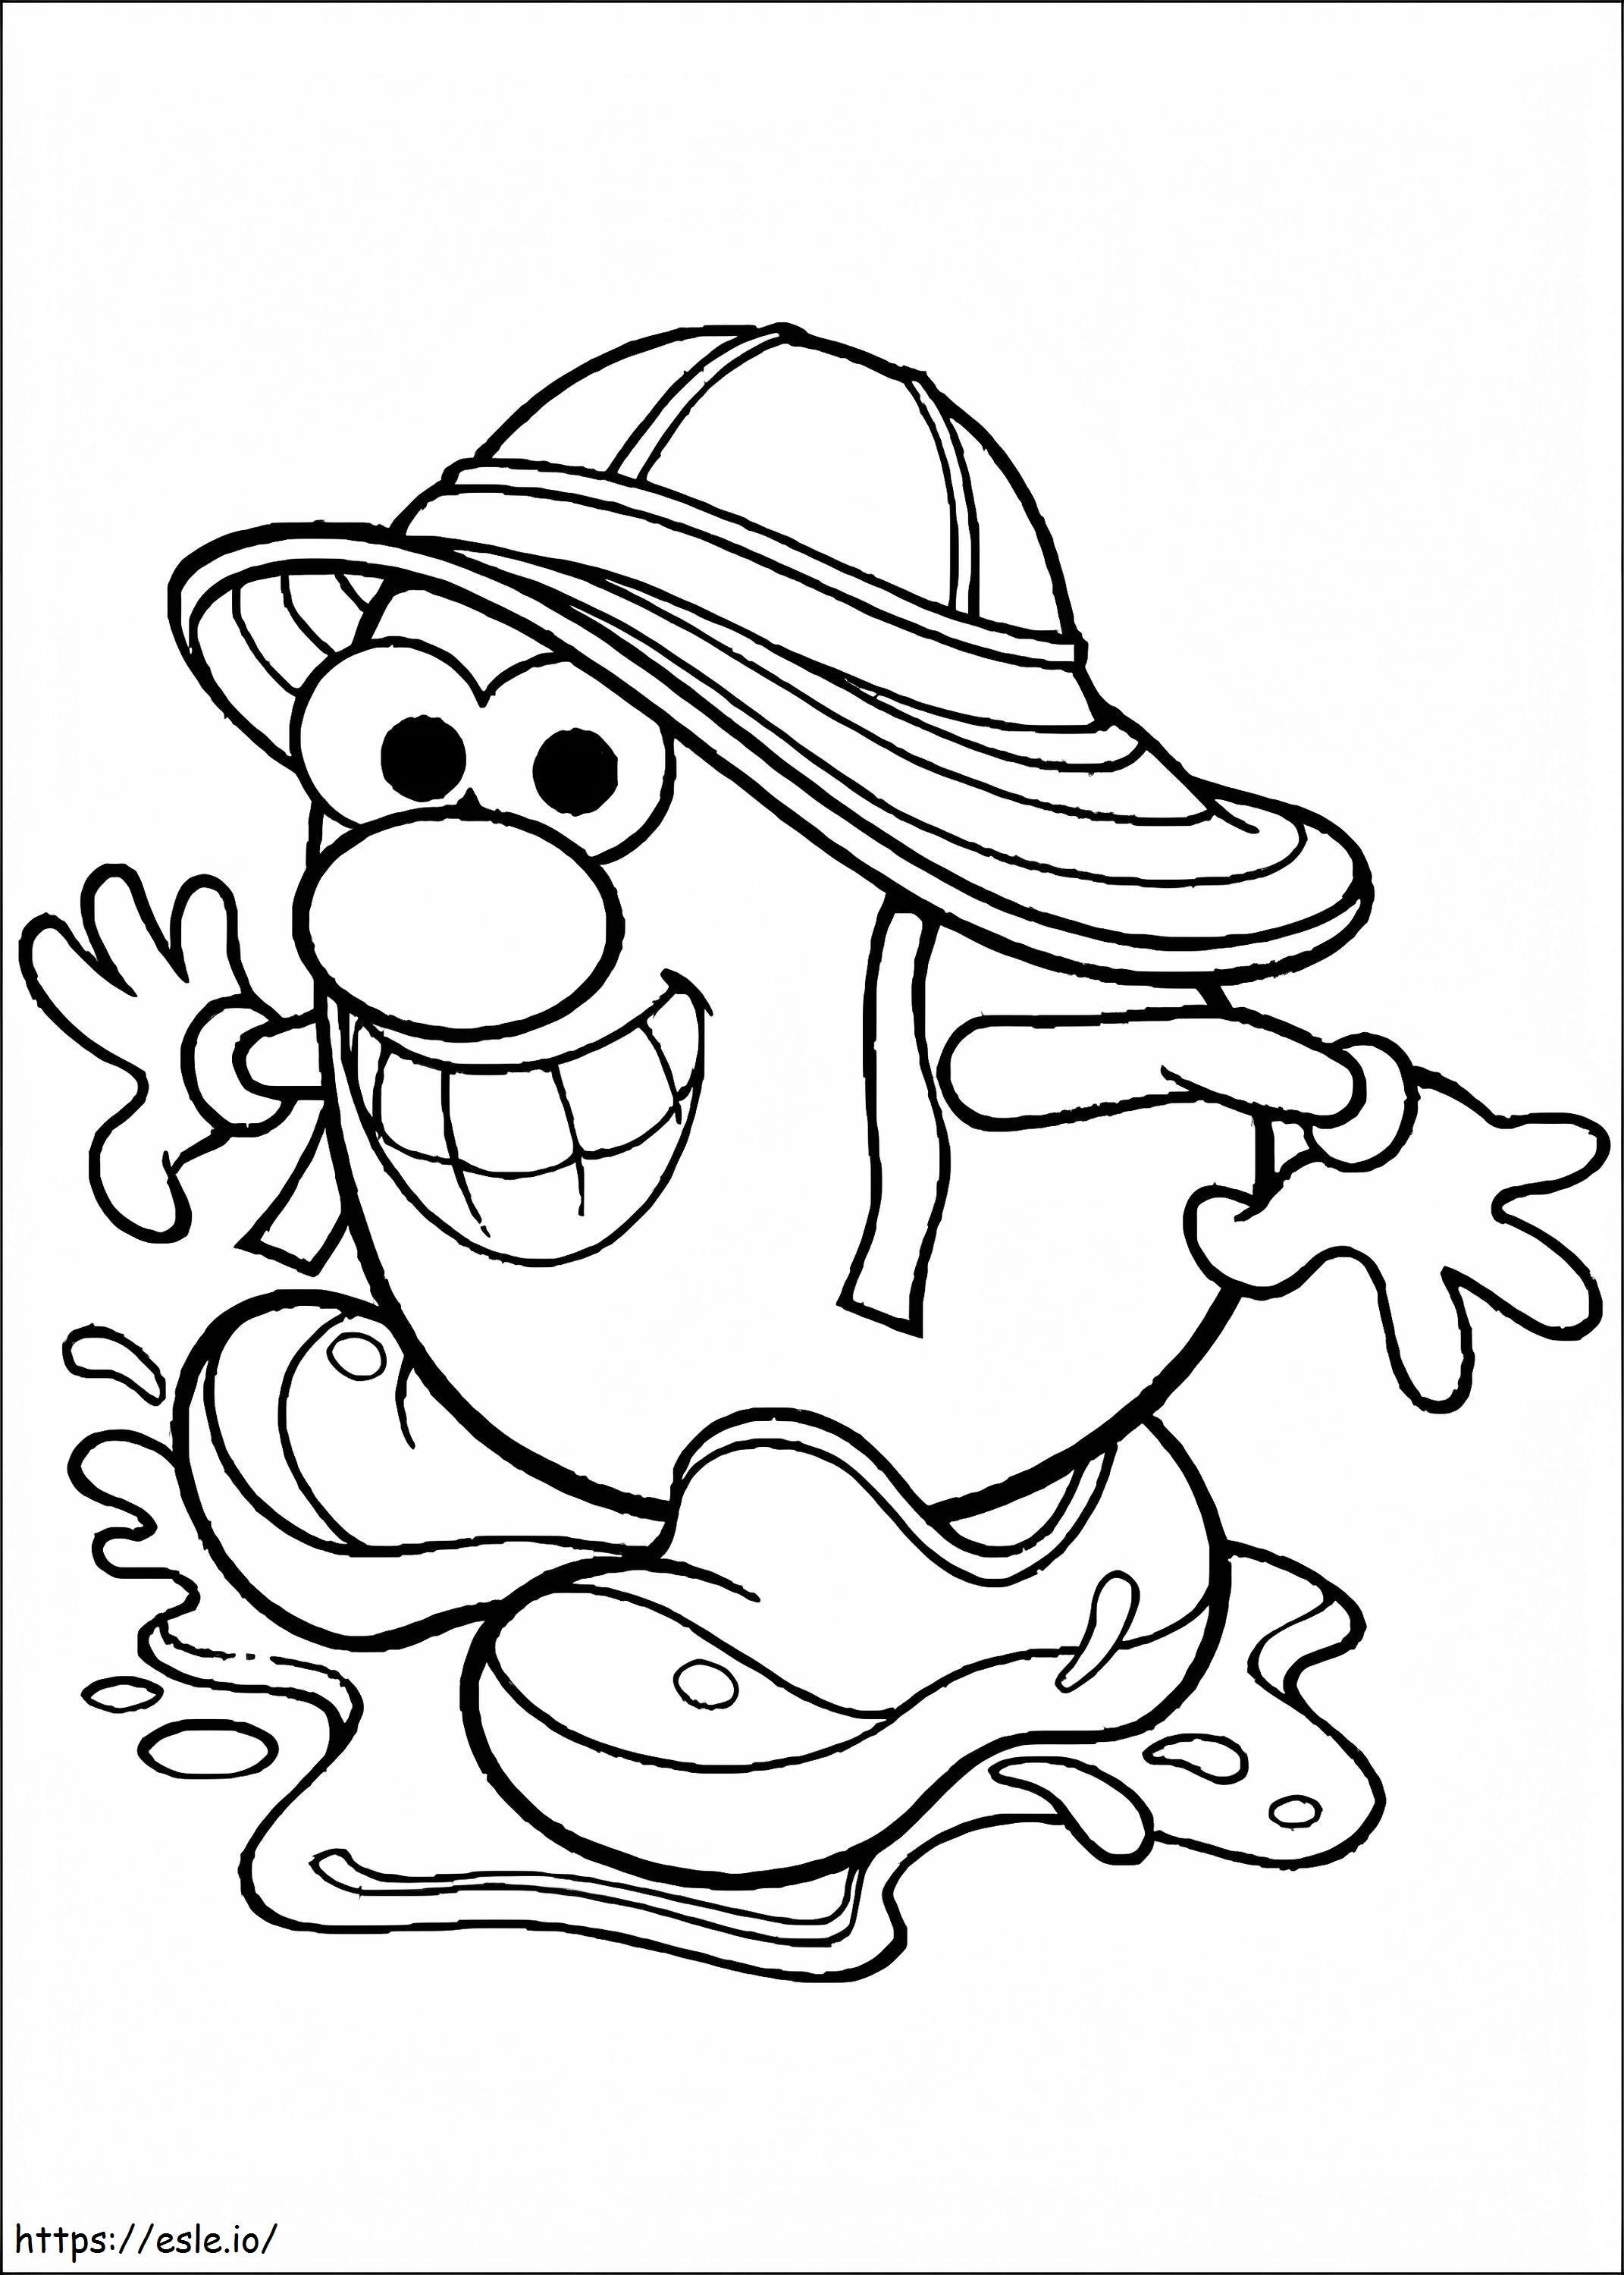 Mr. Potato Head 1 coloring page